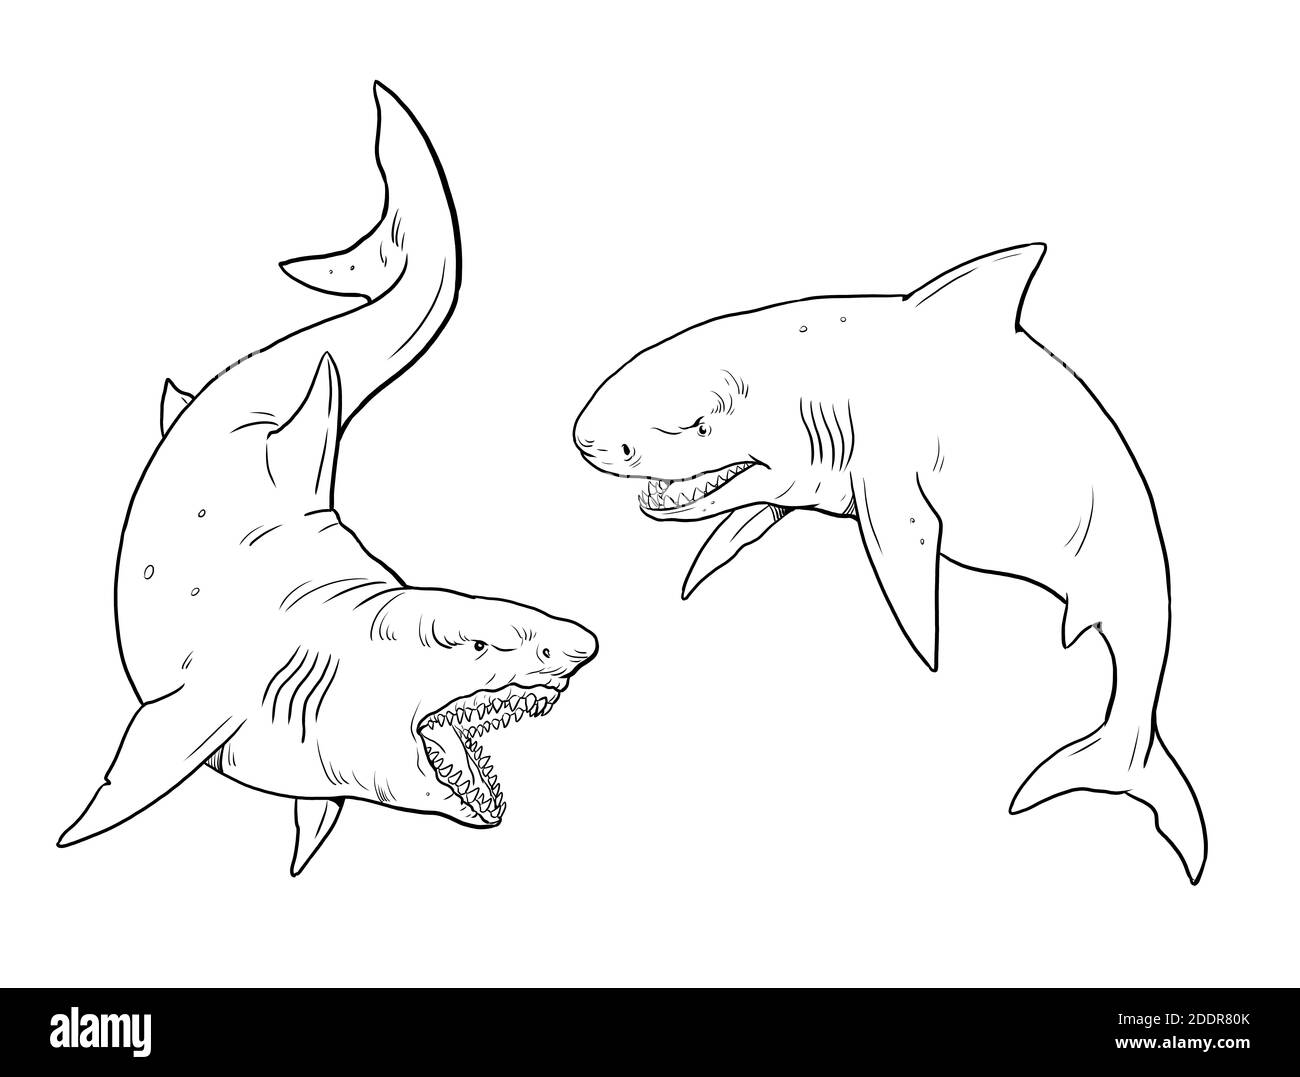 Gabarit de coloriage des requins géants. Gros dessin de requin. Illustration monster megalodon. Banque D'Images